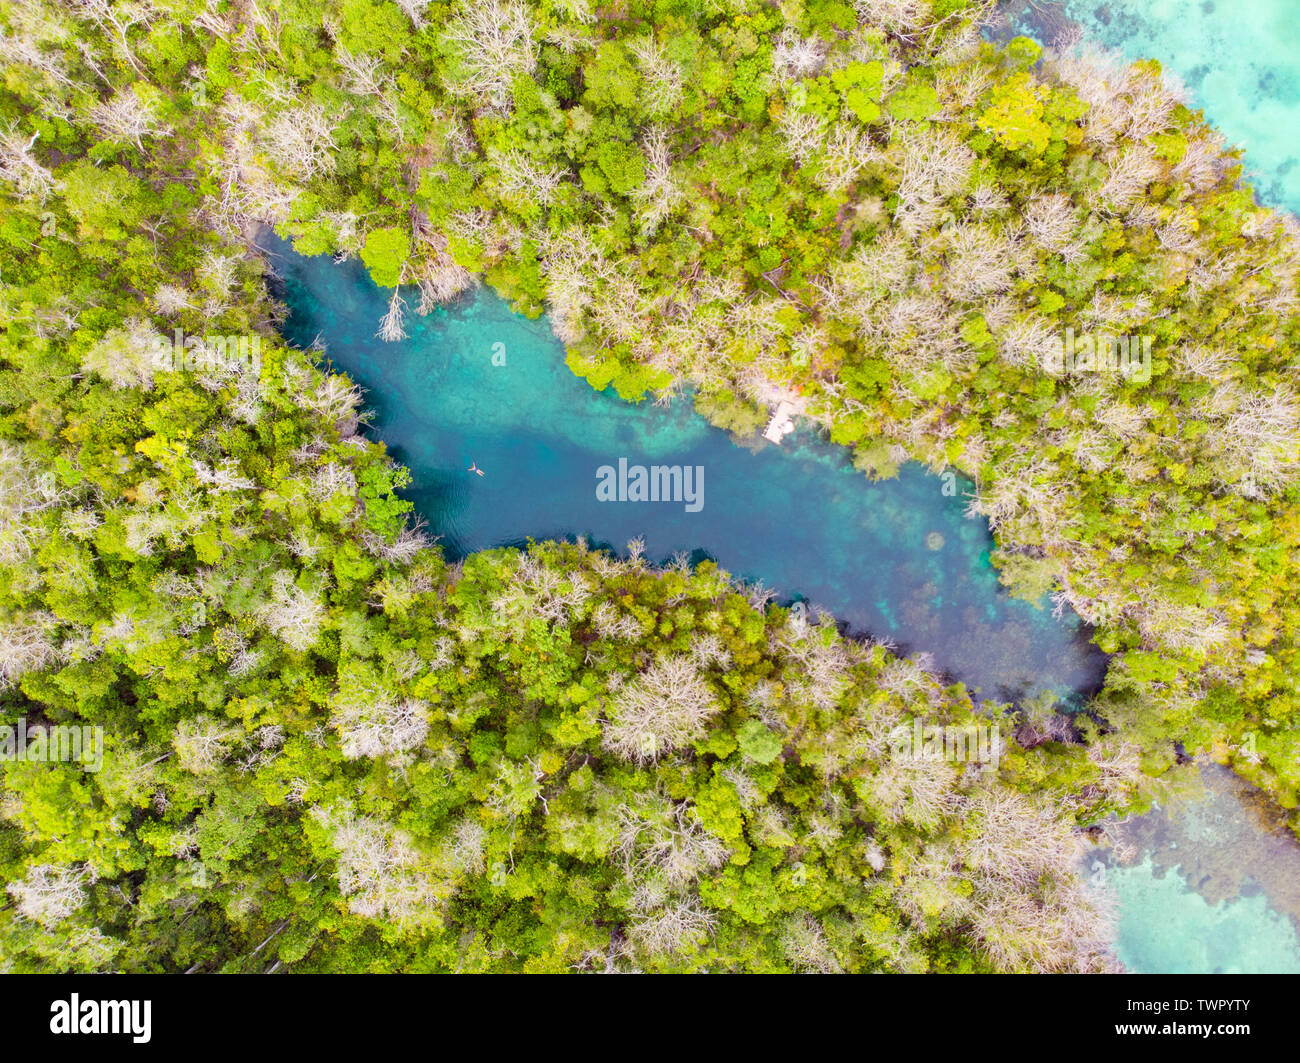 Luftbild von Oben nach Unten anzeigen tropisches Paradies unberührte Küste rainforest Blue Lake an Bair Insel. Indonesien Molukken Archipel, Kei Inseln, Banda See Stockfoto